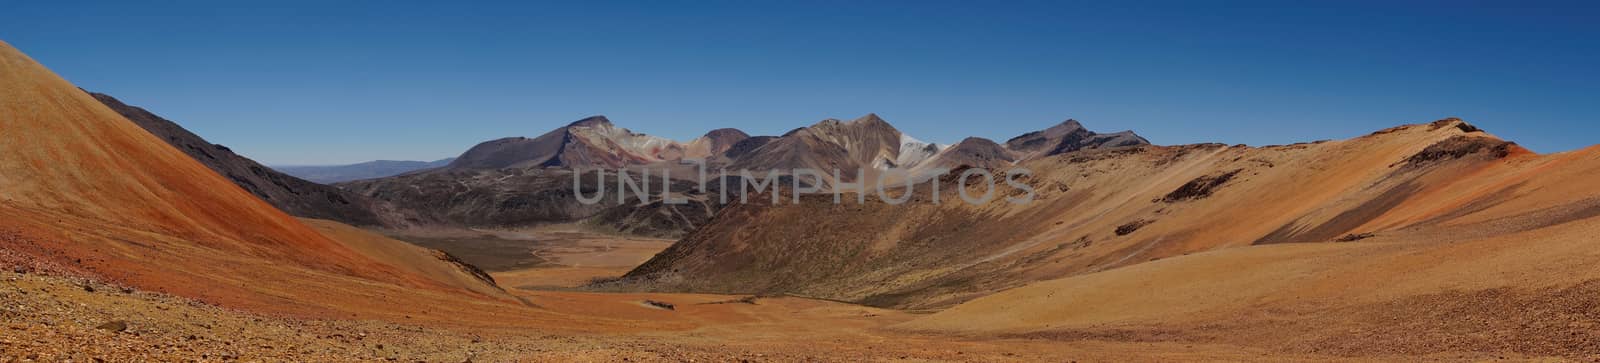 Atacama Panorama by JeremyRichards